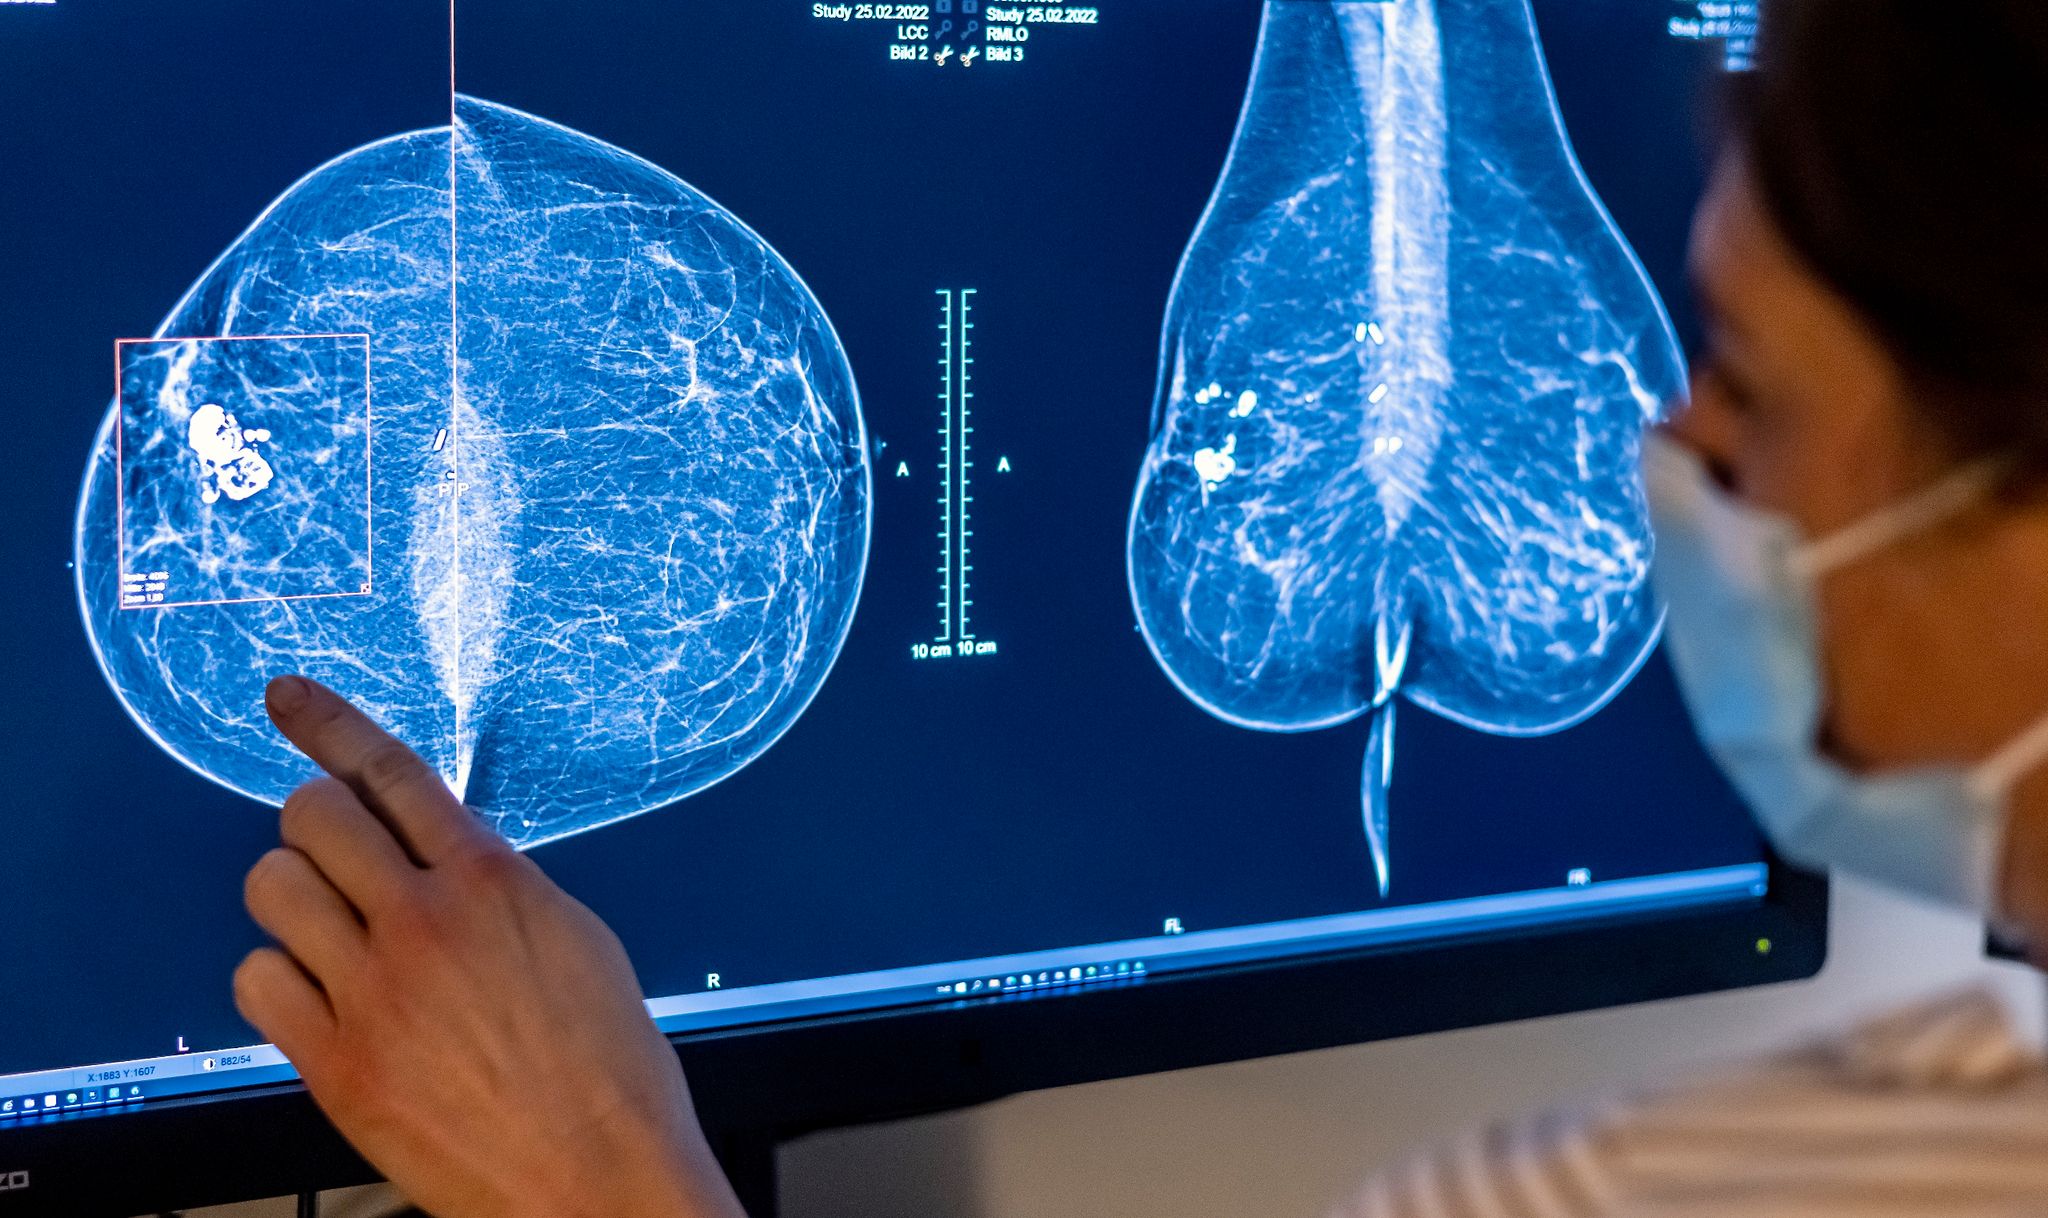 Brustkrebs ist die häufigste Krebserkrankung bei Frauen in Deutschland.